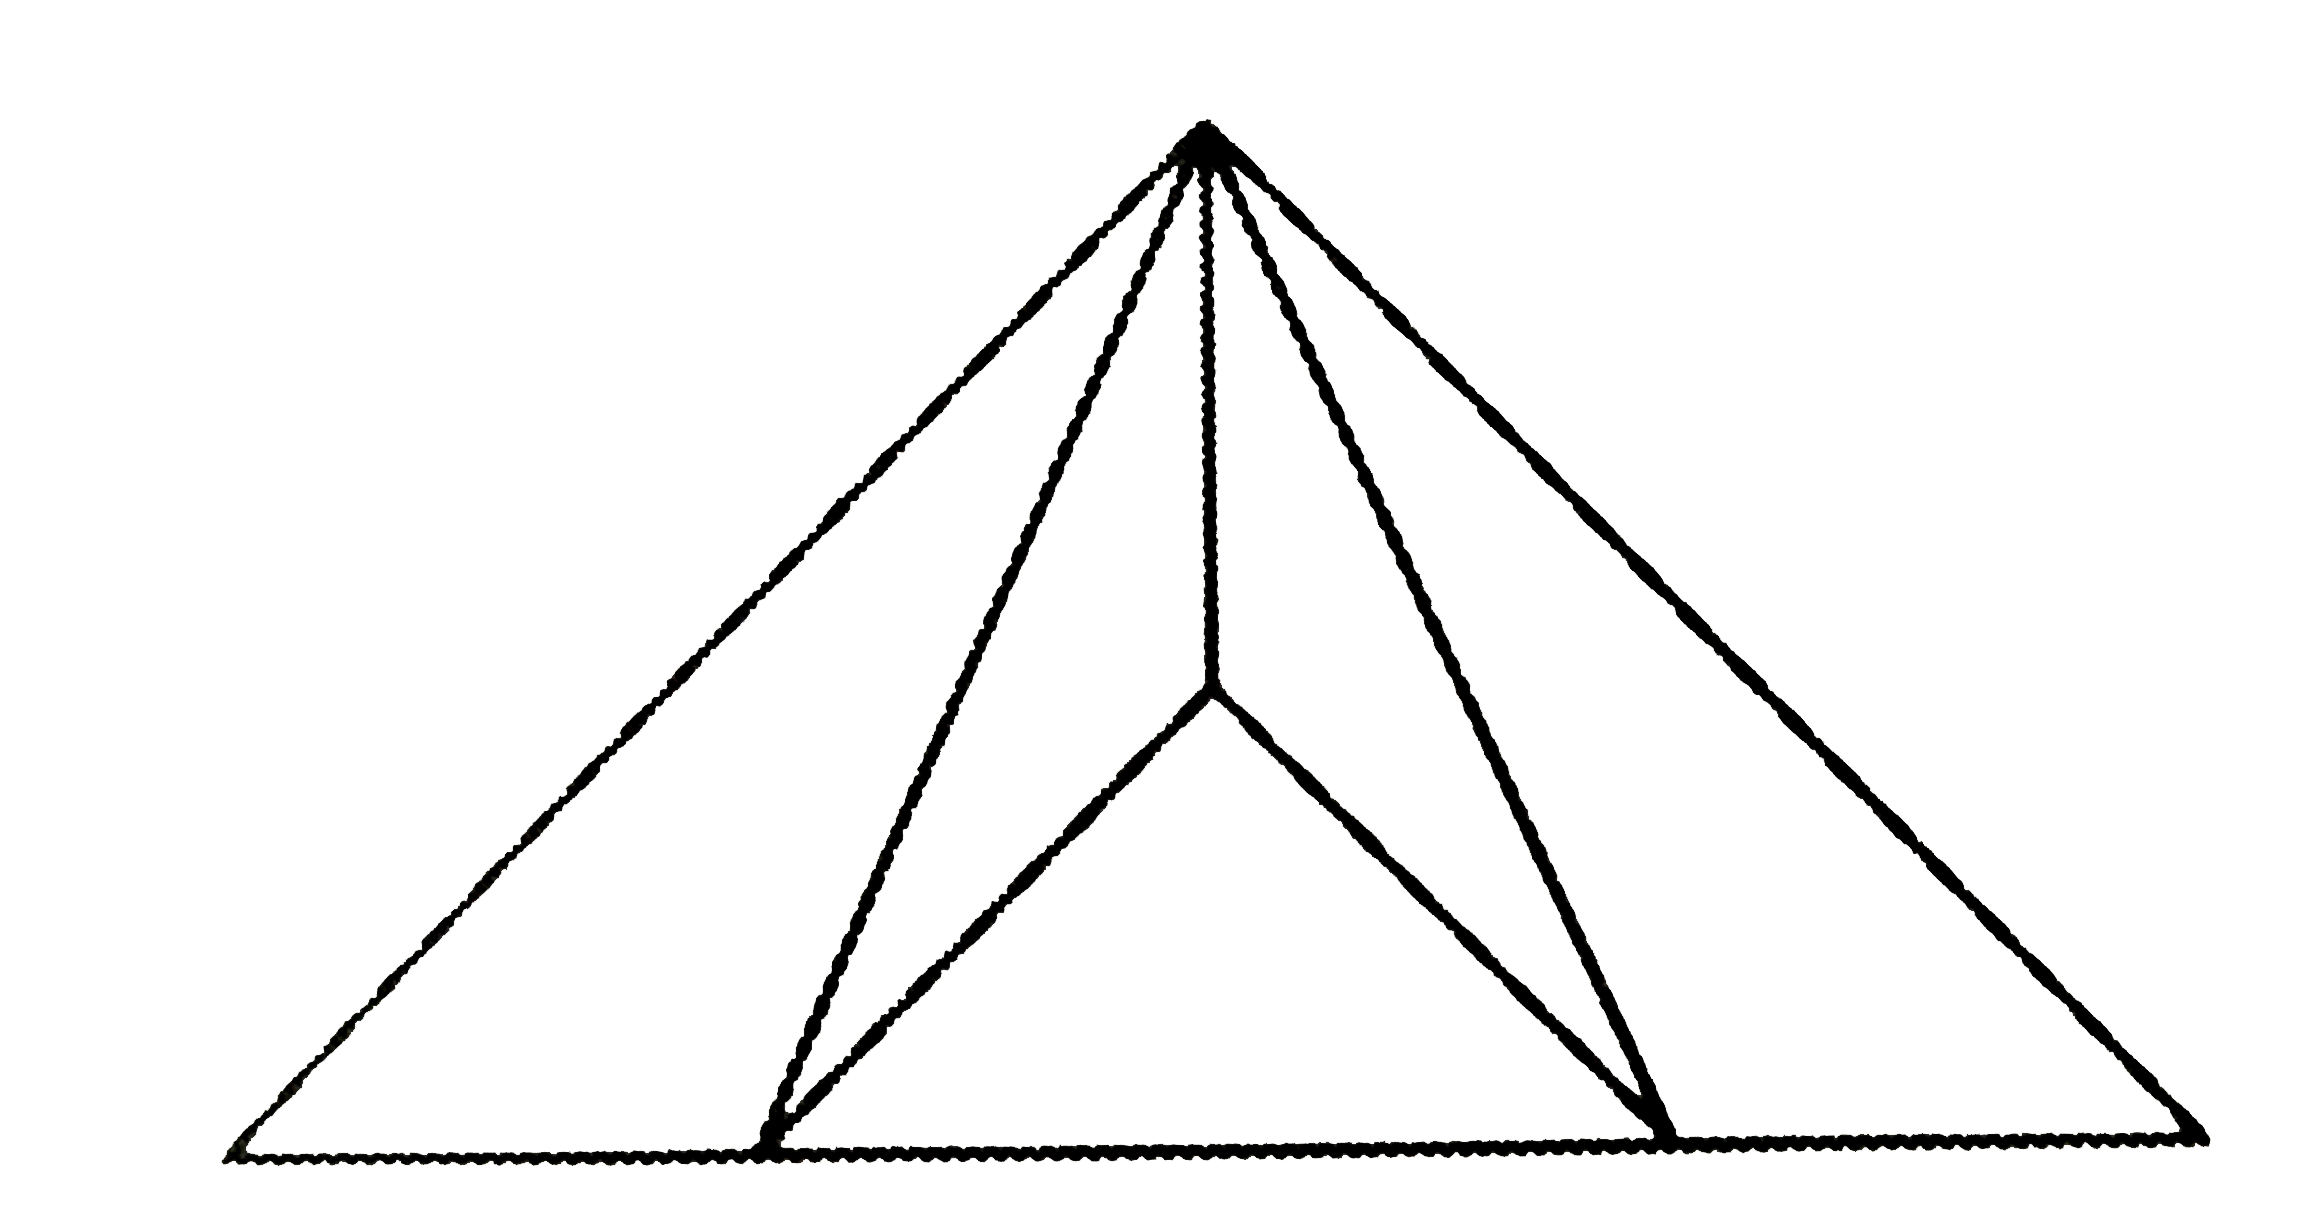 दी गई आकृति में त्रिभुजों की संख्या ज्ञात कीजिए :